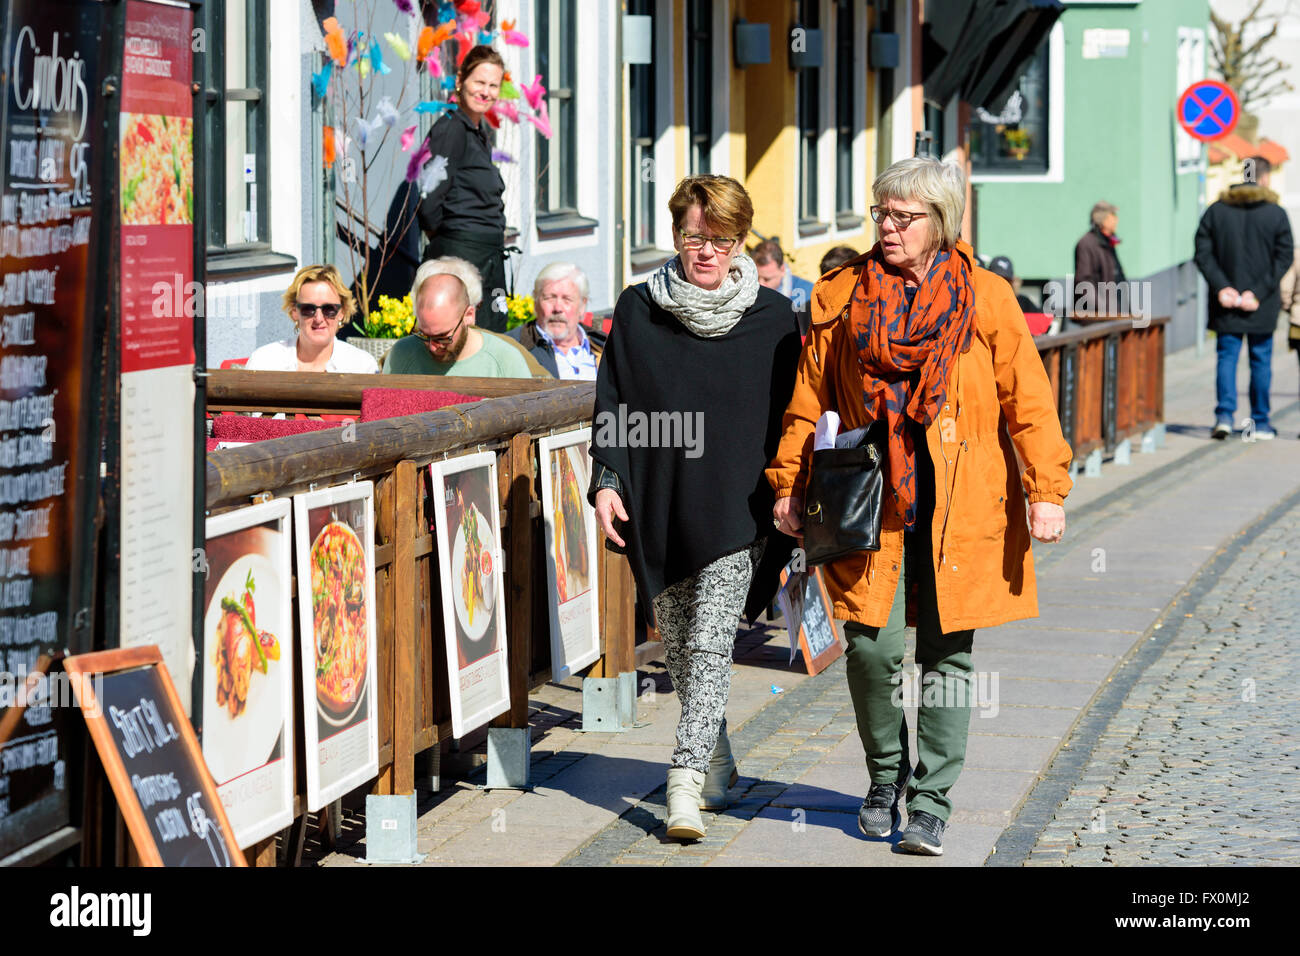 Simrishamn, Schweden - 1 April, 2016: Zwei ältere Frauen gehen durch ein Restaurant, miteinander zu reden. Echte Menschen im Alltag. Stockfoto